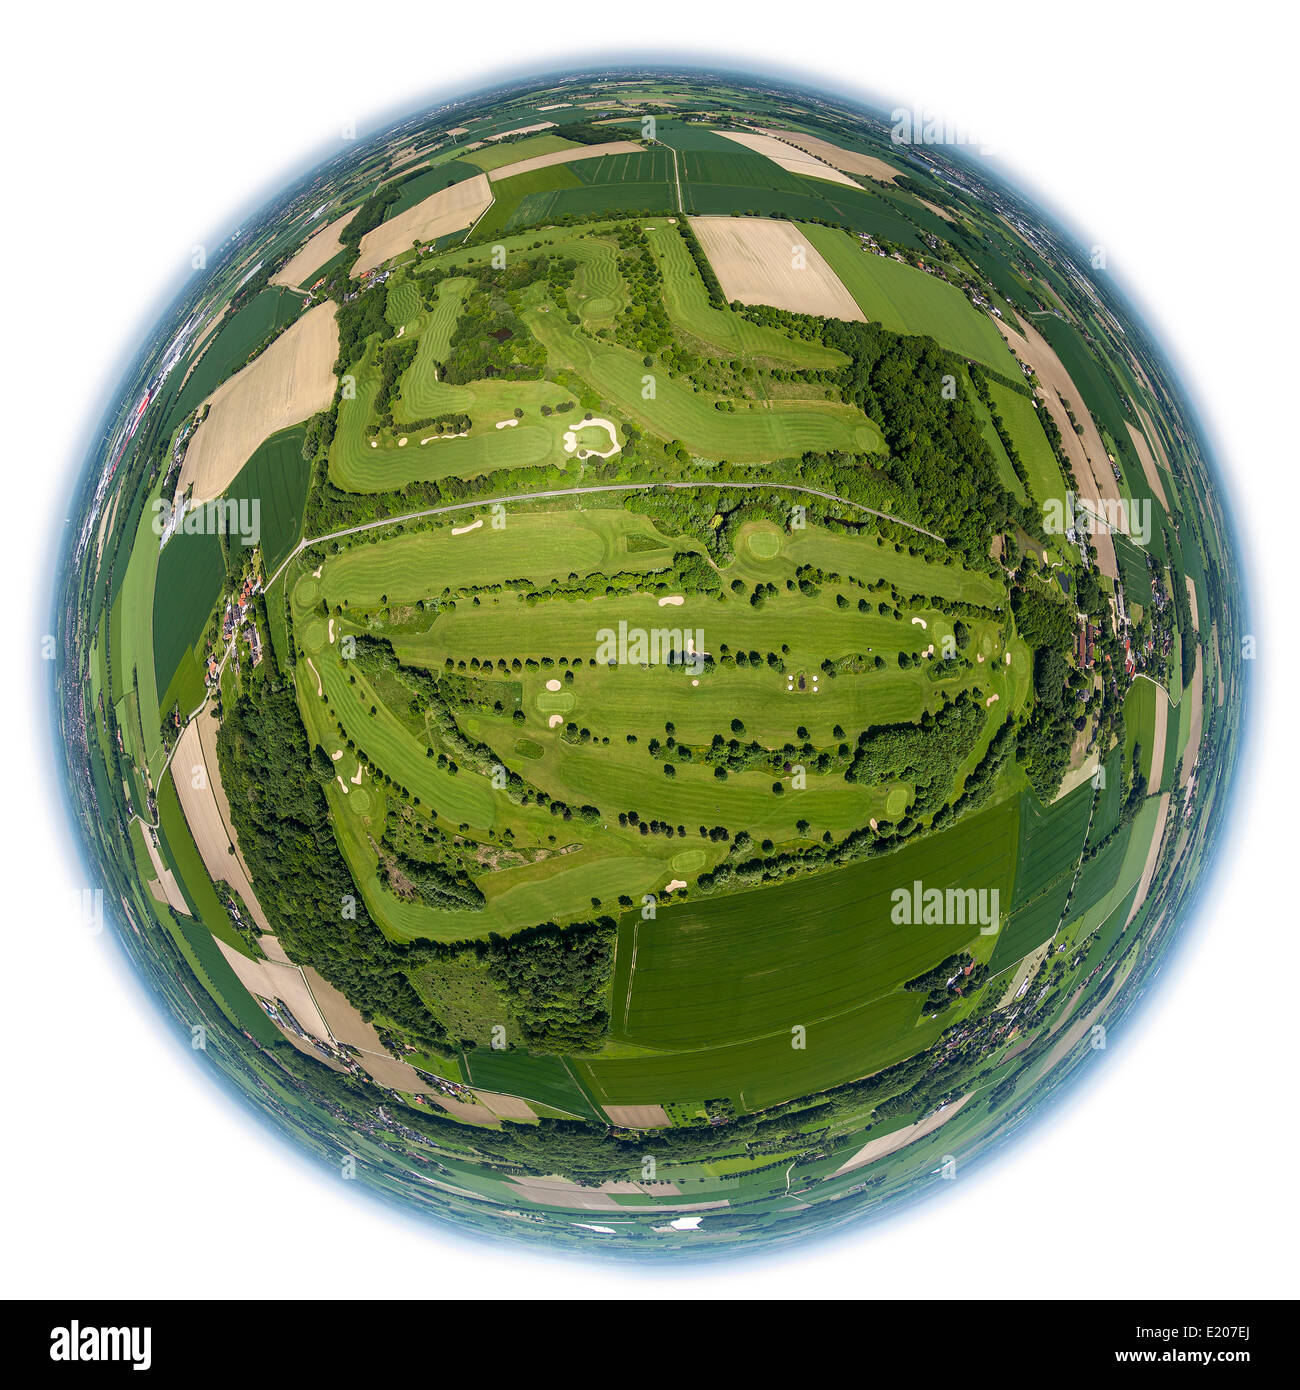 Luftaufnahme, fisheye, Golfplatz Hamm, Golfclub Hamm-Drechen, Hamm, Ruhrgebiet, Nordrhein-Westfalen, Deutschland Stockfoto